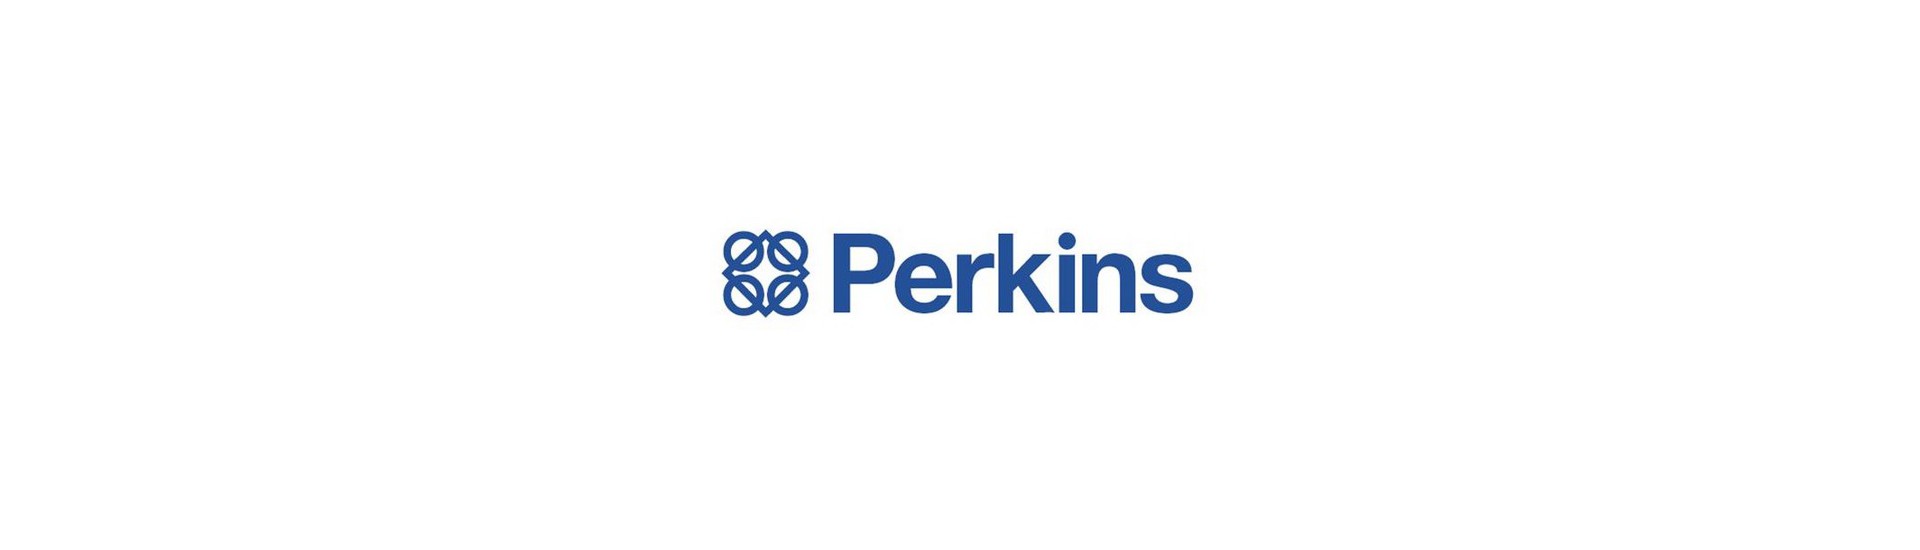 Motor occasion parts Perkins au meilleur prix